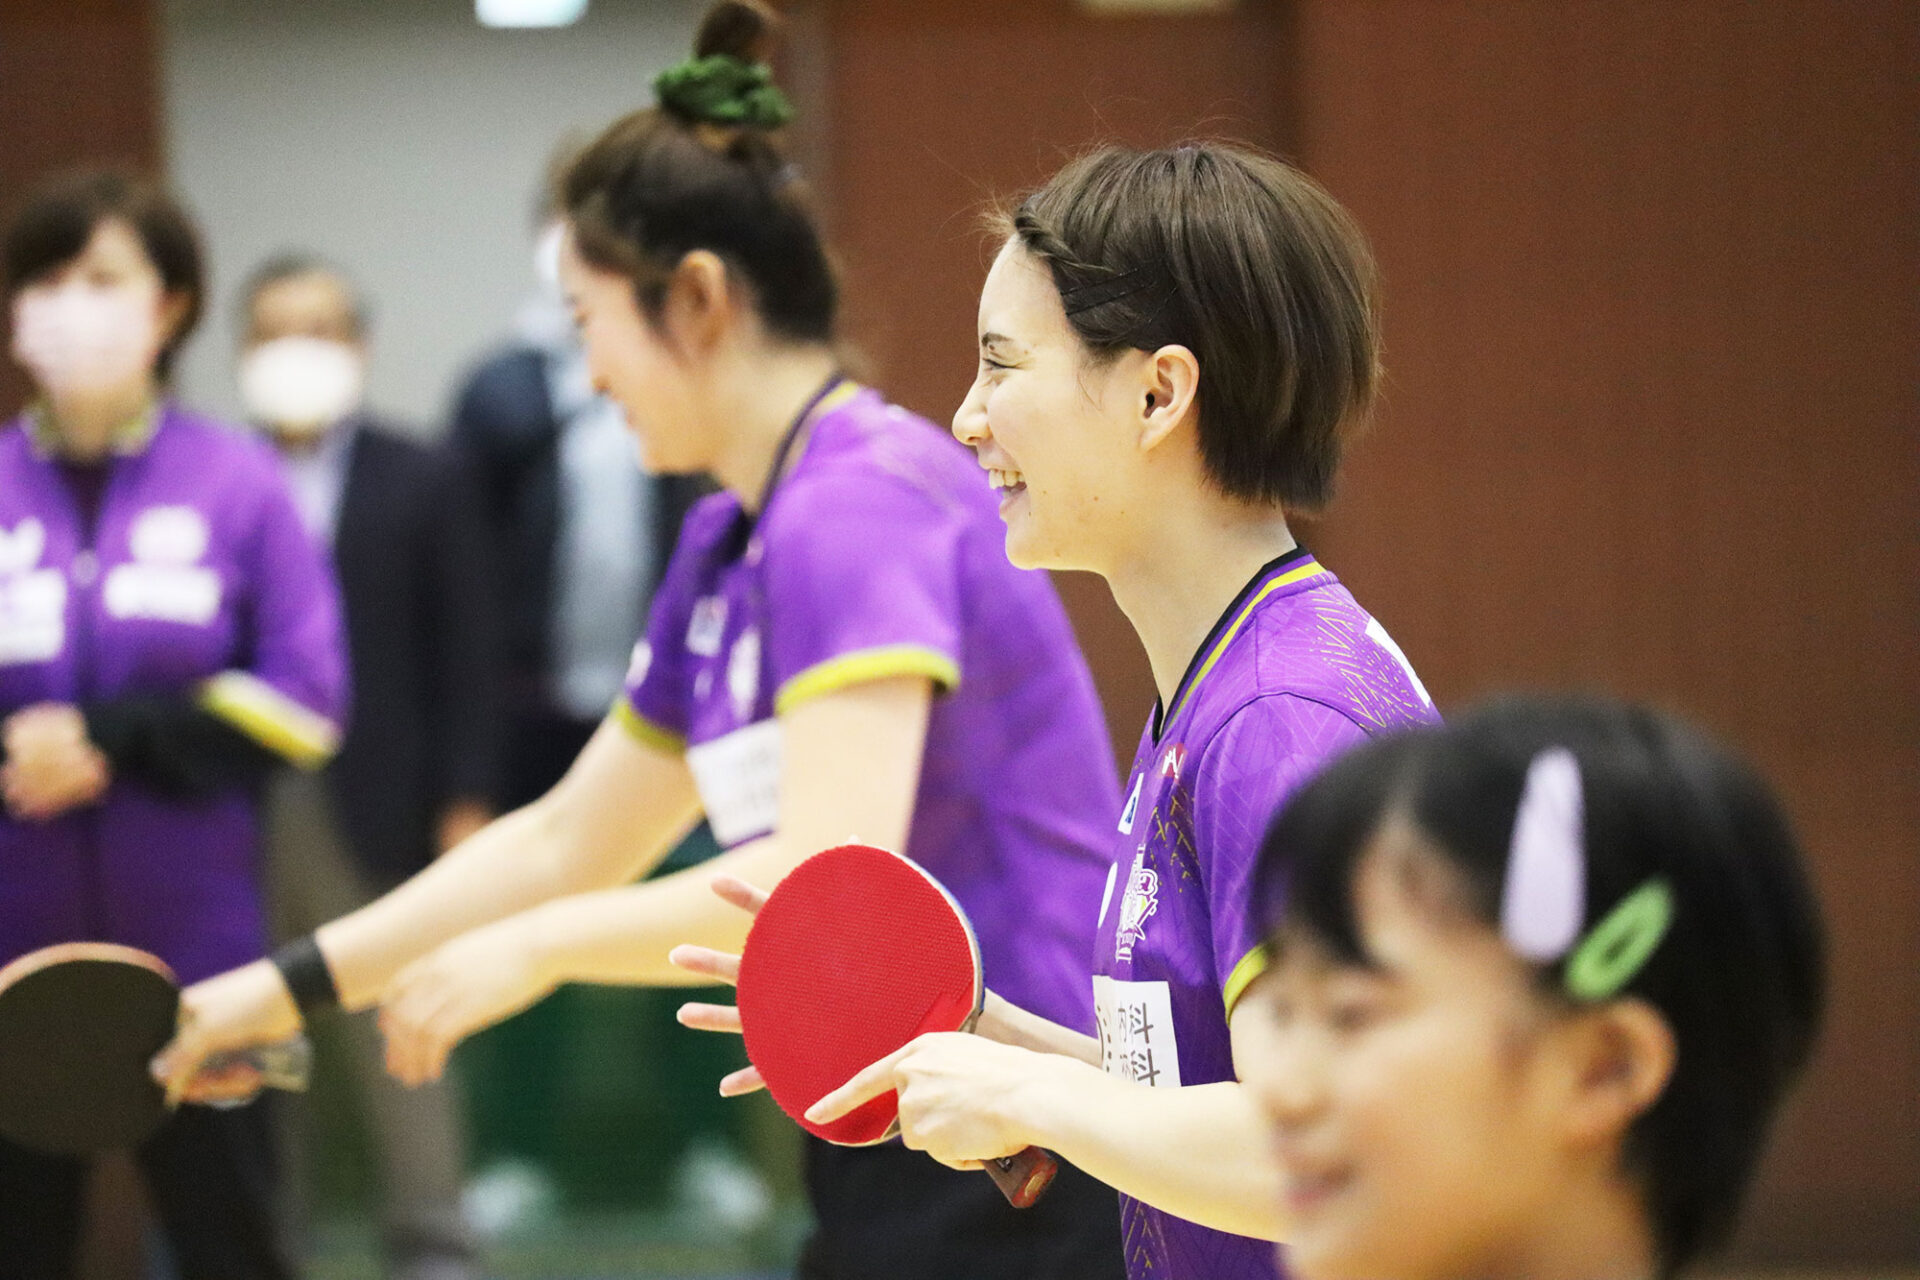 『京都市卓球カーニバル』に参加しました